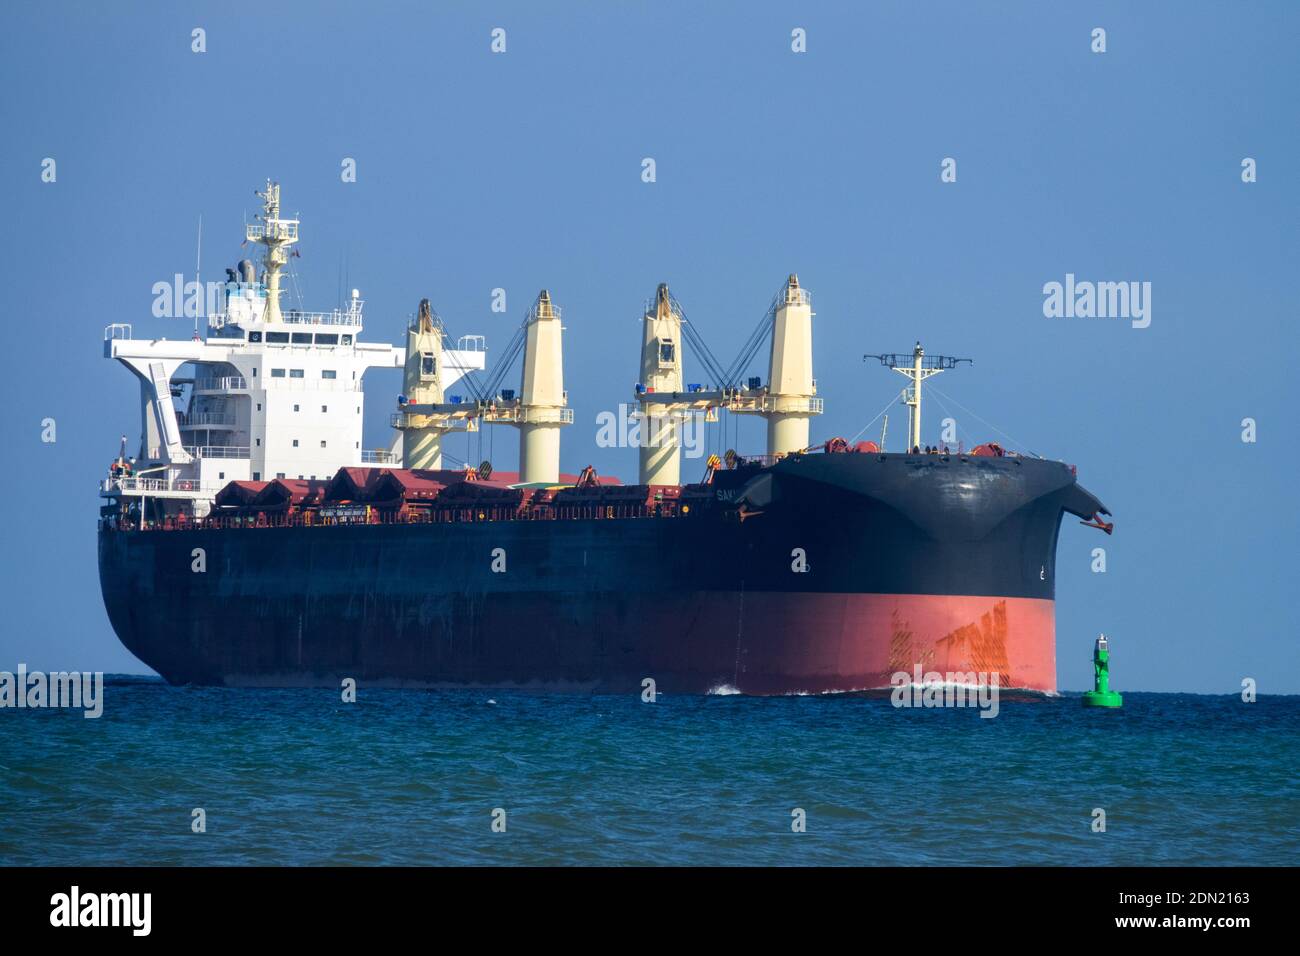 Comercio mundial Alemania barco de comercio en el mar Báltico Foto de stock